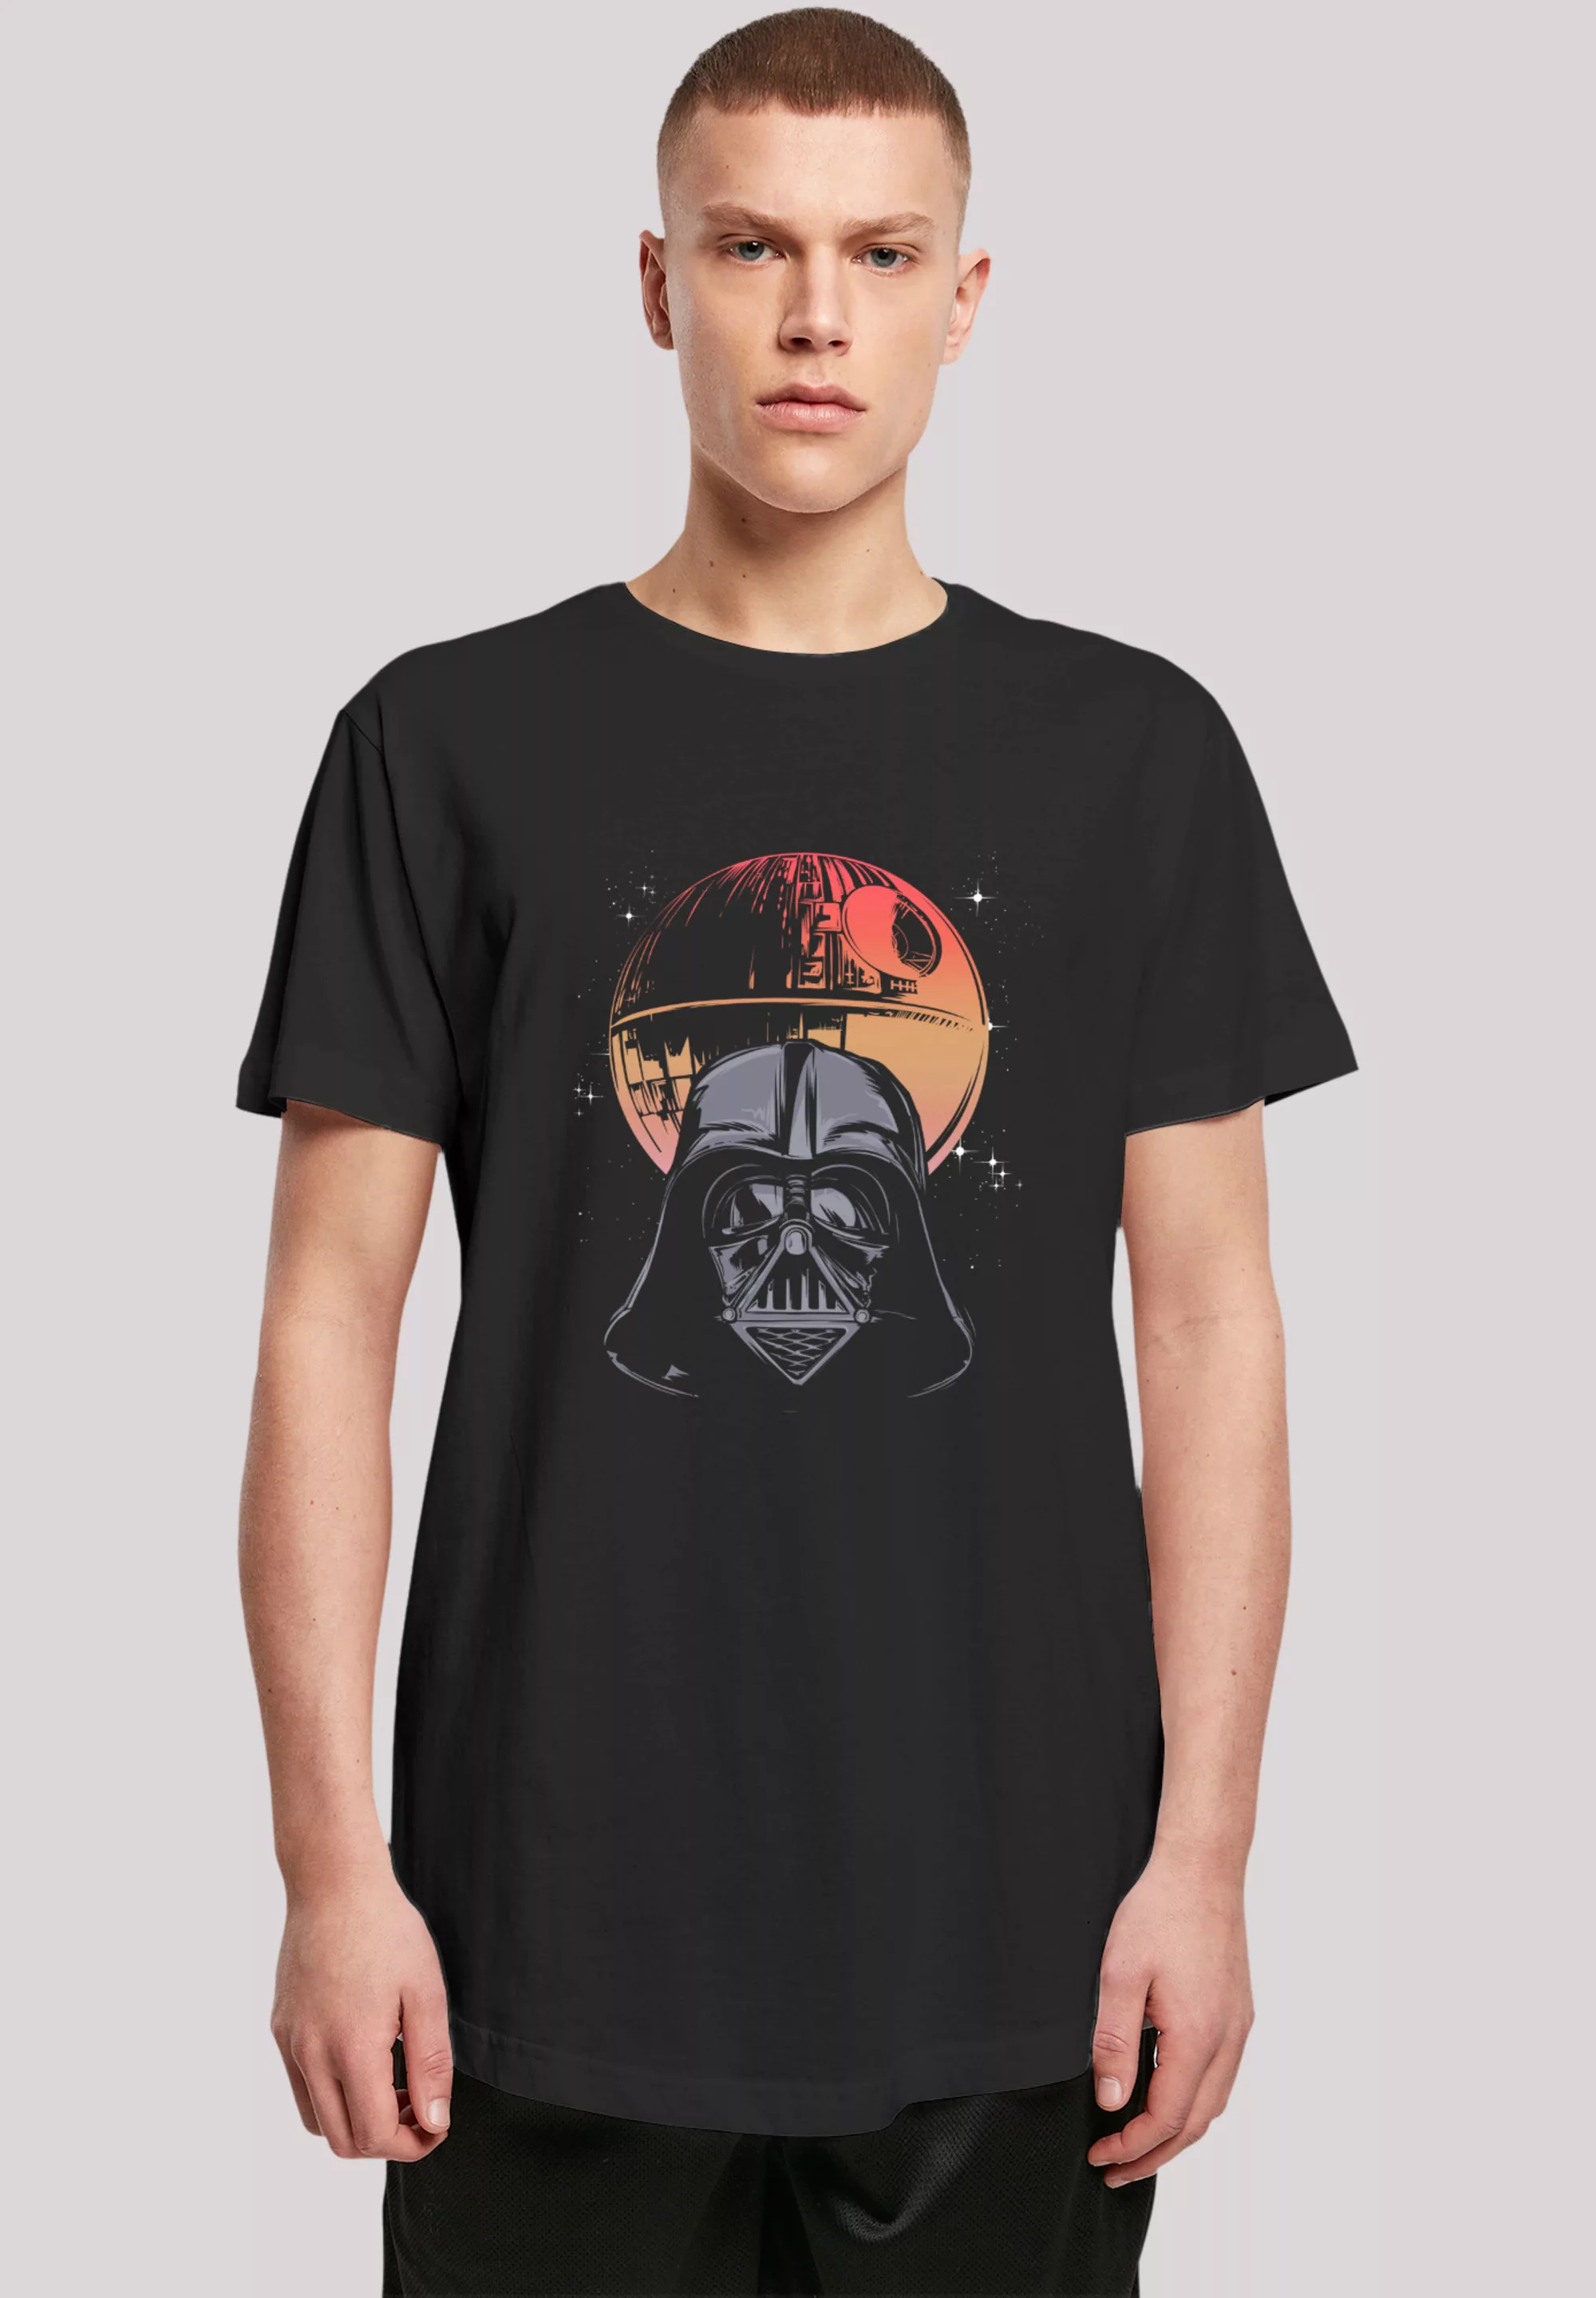 F4NT4STIC T-Shirt "Star Wars Darth Vader Death Star", Premium Qualität günstig online kaufen